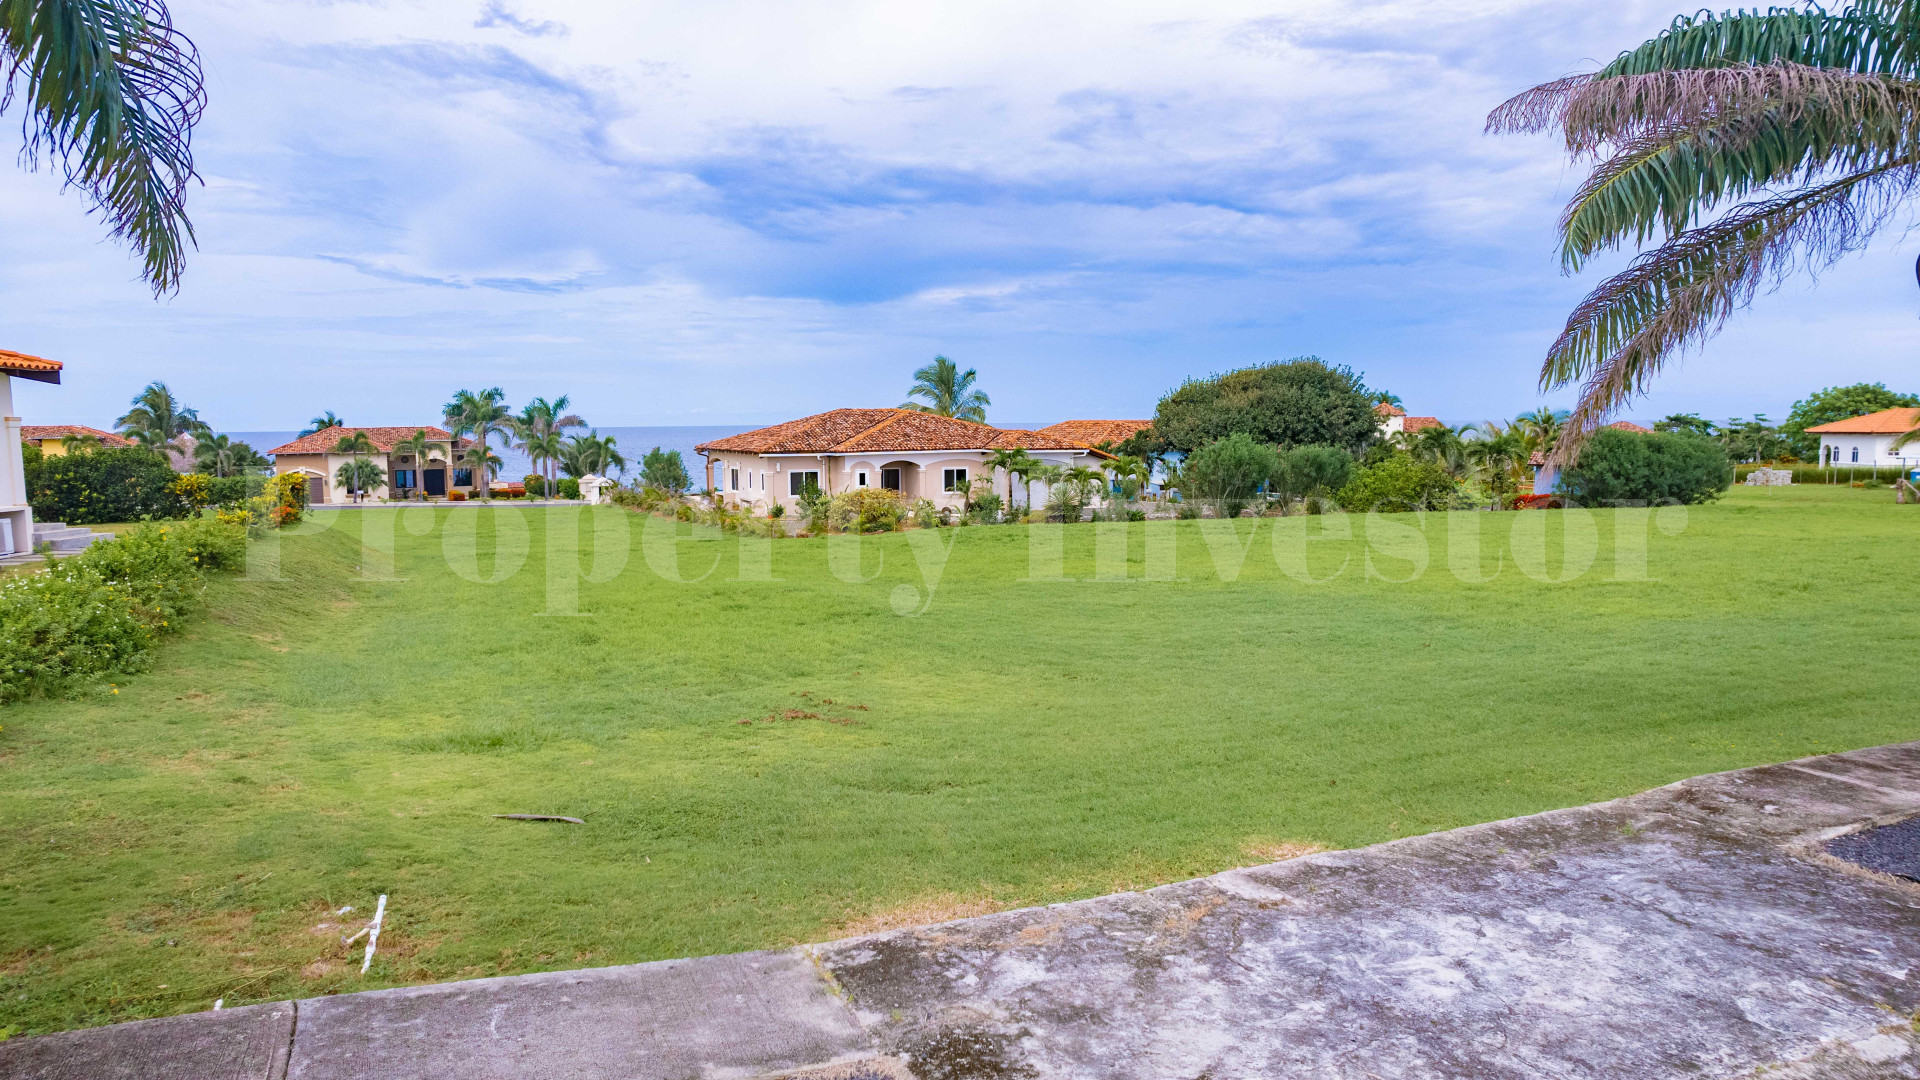 Продаются участки земли под жилую застройку 11-13 соток с видом на океан в Педаси, Панама